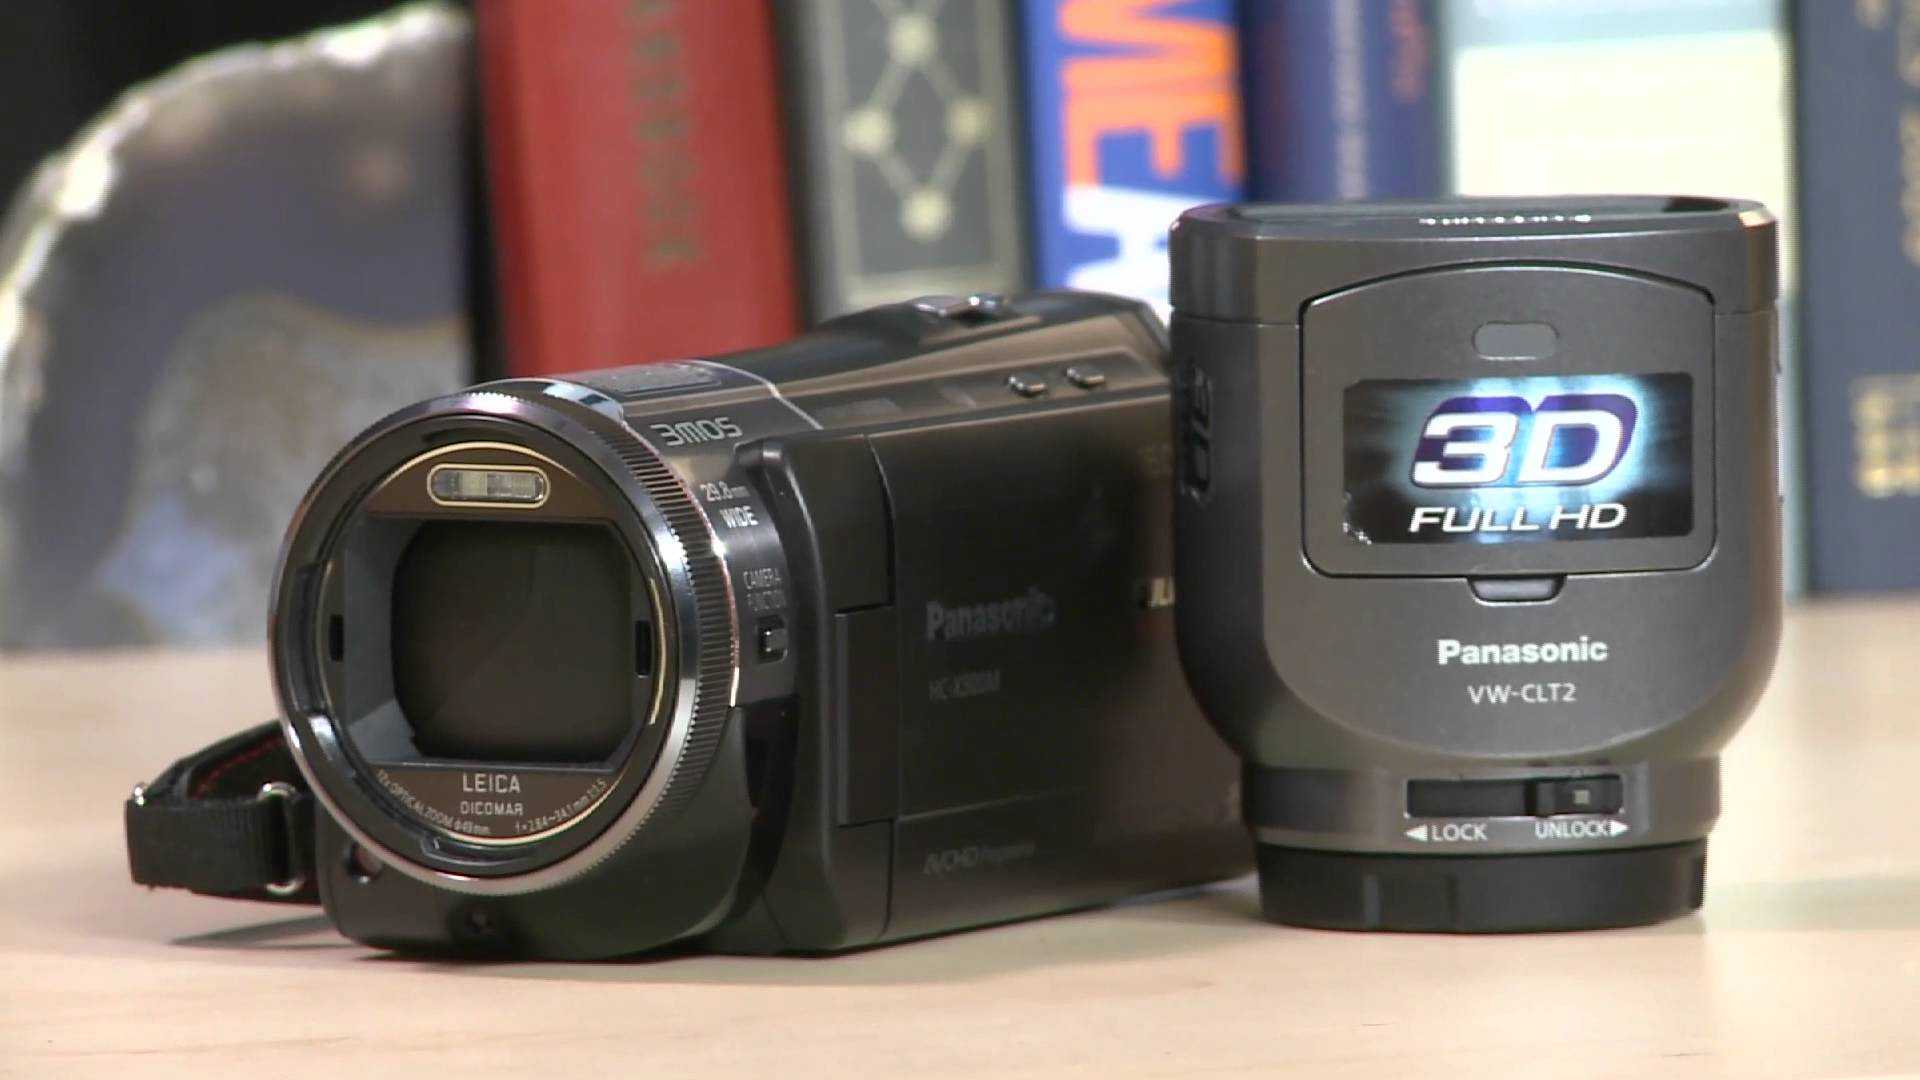 Видеокамера panasonic hc-x900m — купить, цена и характеристики, отзывы